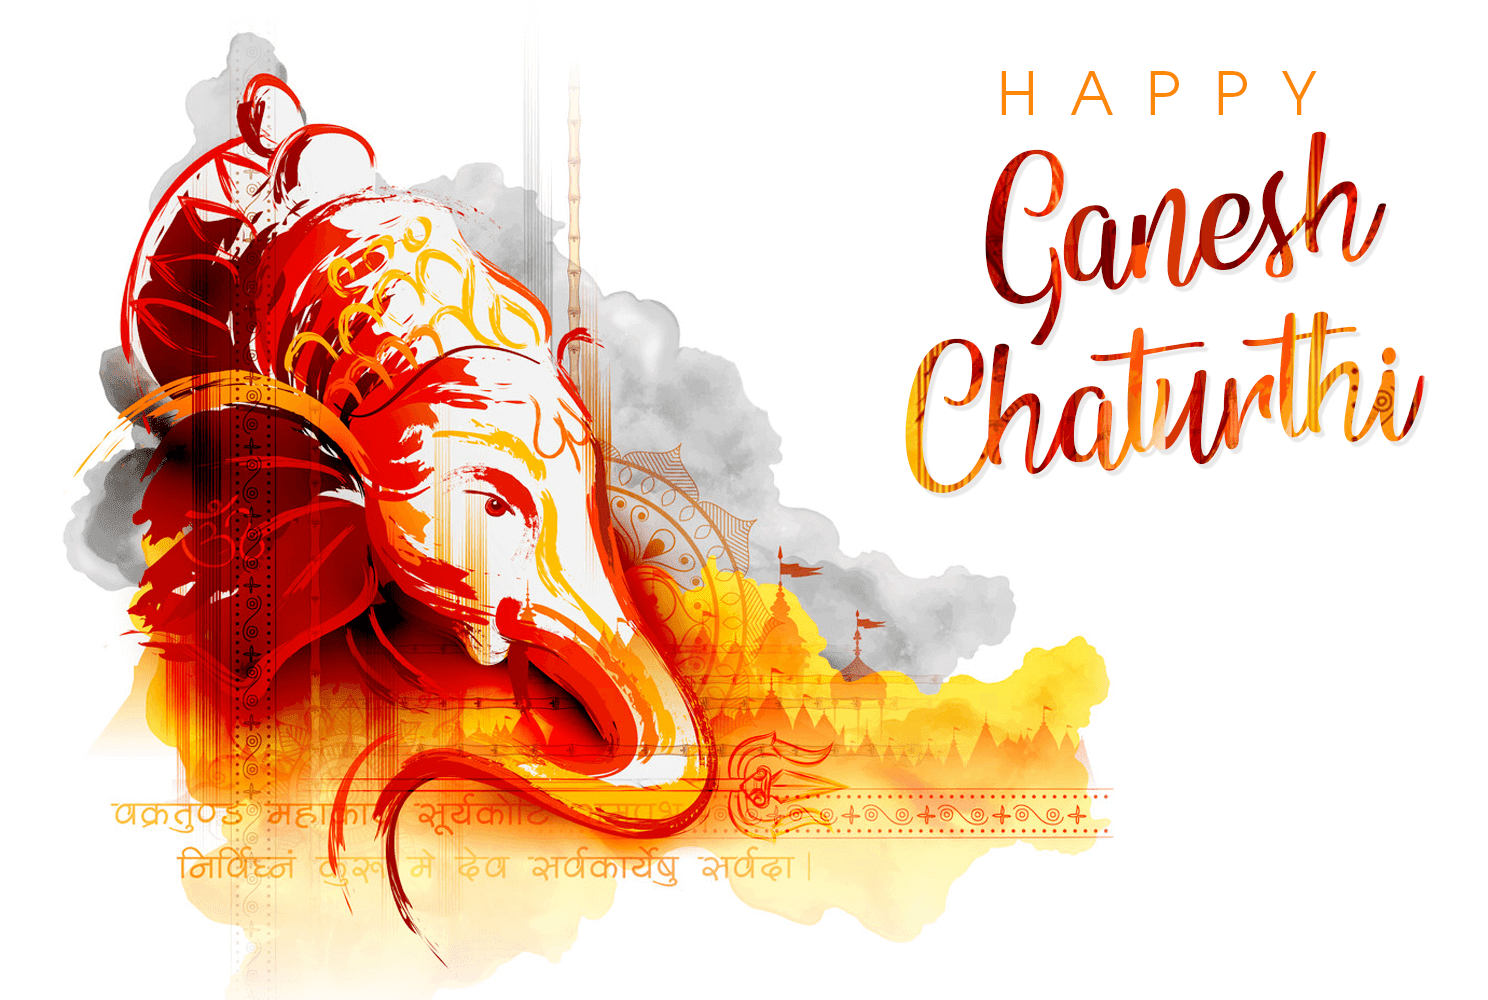 Ganesh Chaturthi Wallpapers - Top Free Ganesh Chaturthi ...